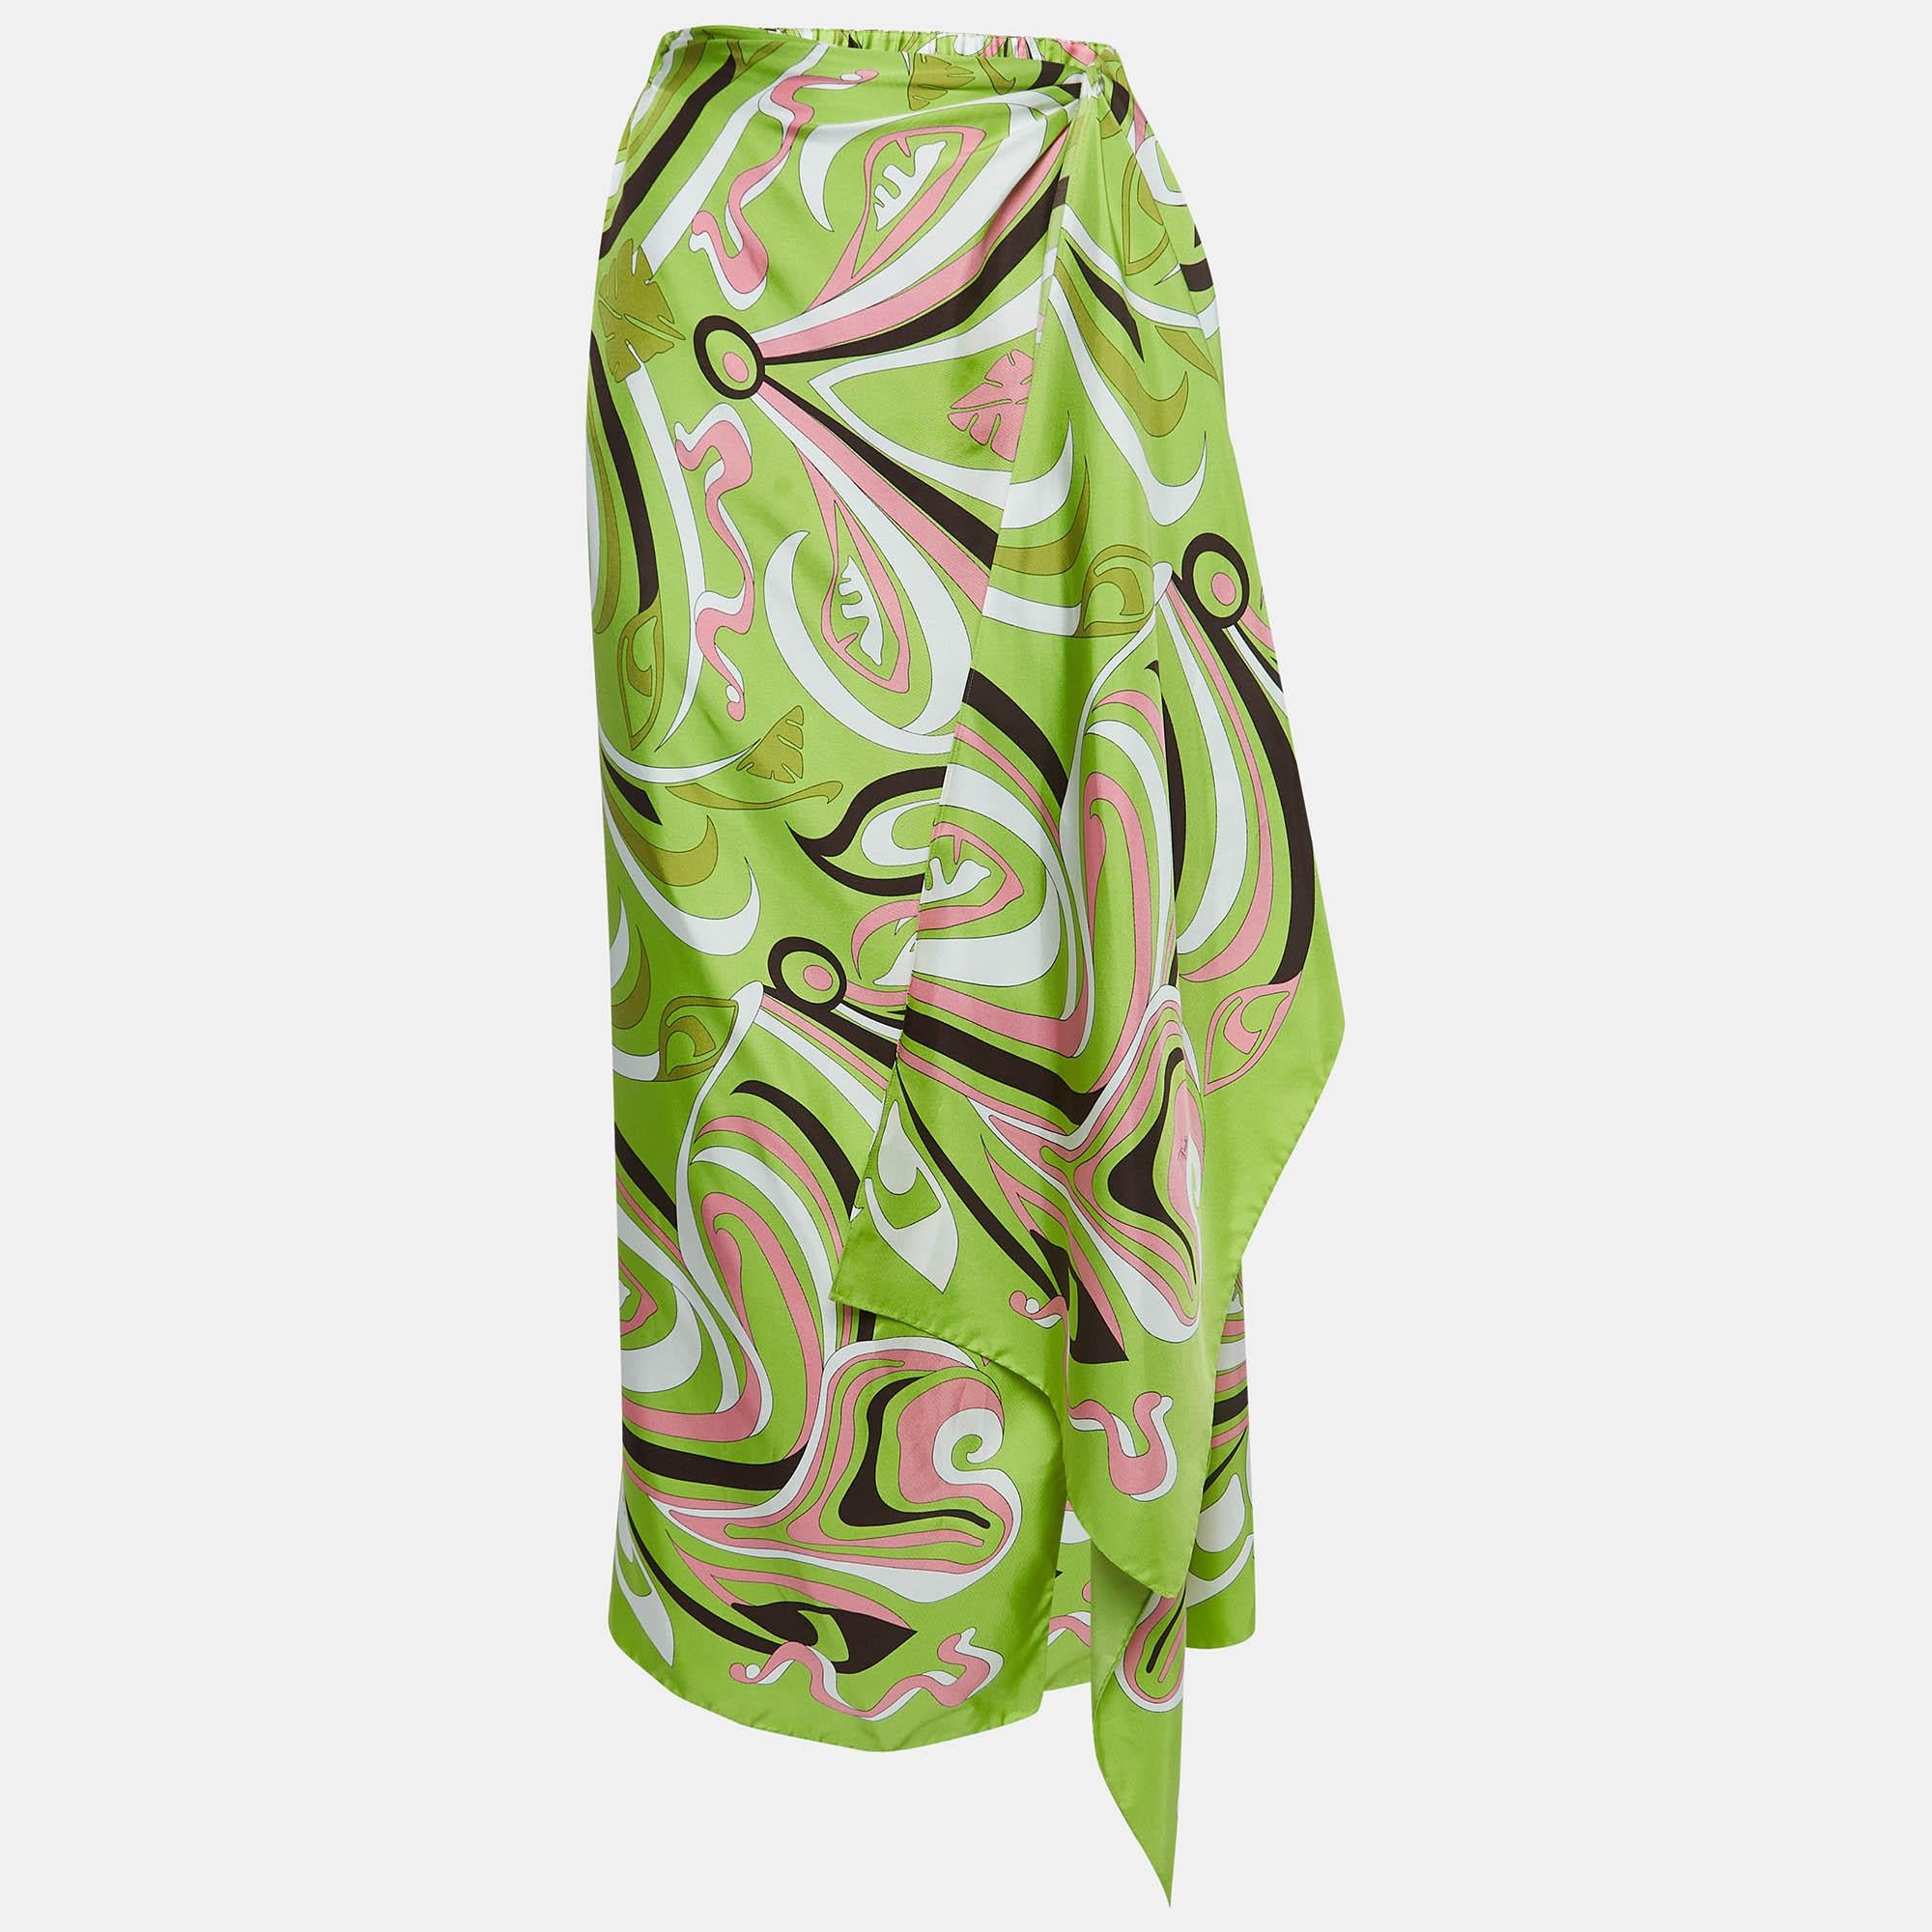 Der Pareo von Emilio Pucci ist aus luxuriöser Seide gefertigt und versprüht mühelos Charme. Kräftige Grüntöne tanzen über den Stoff, der mit den für Pucci charakteristischen komplizierten Mustern verziert ist und ein Gefühl von Fernweh und Stil